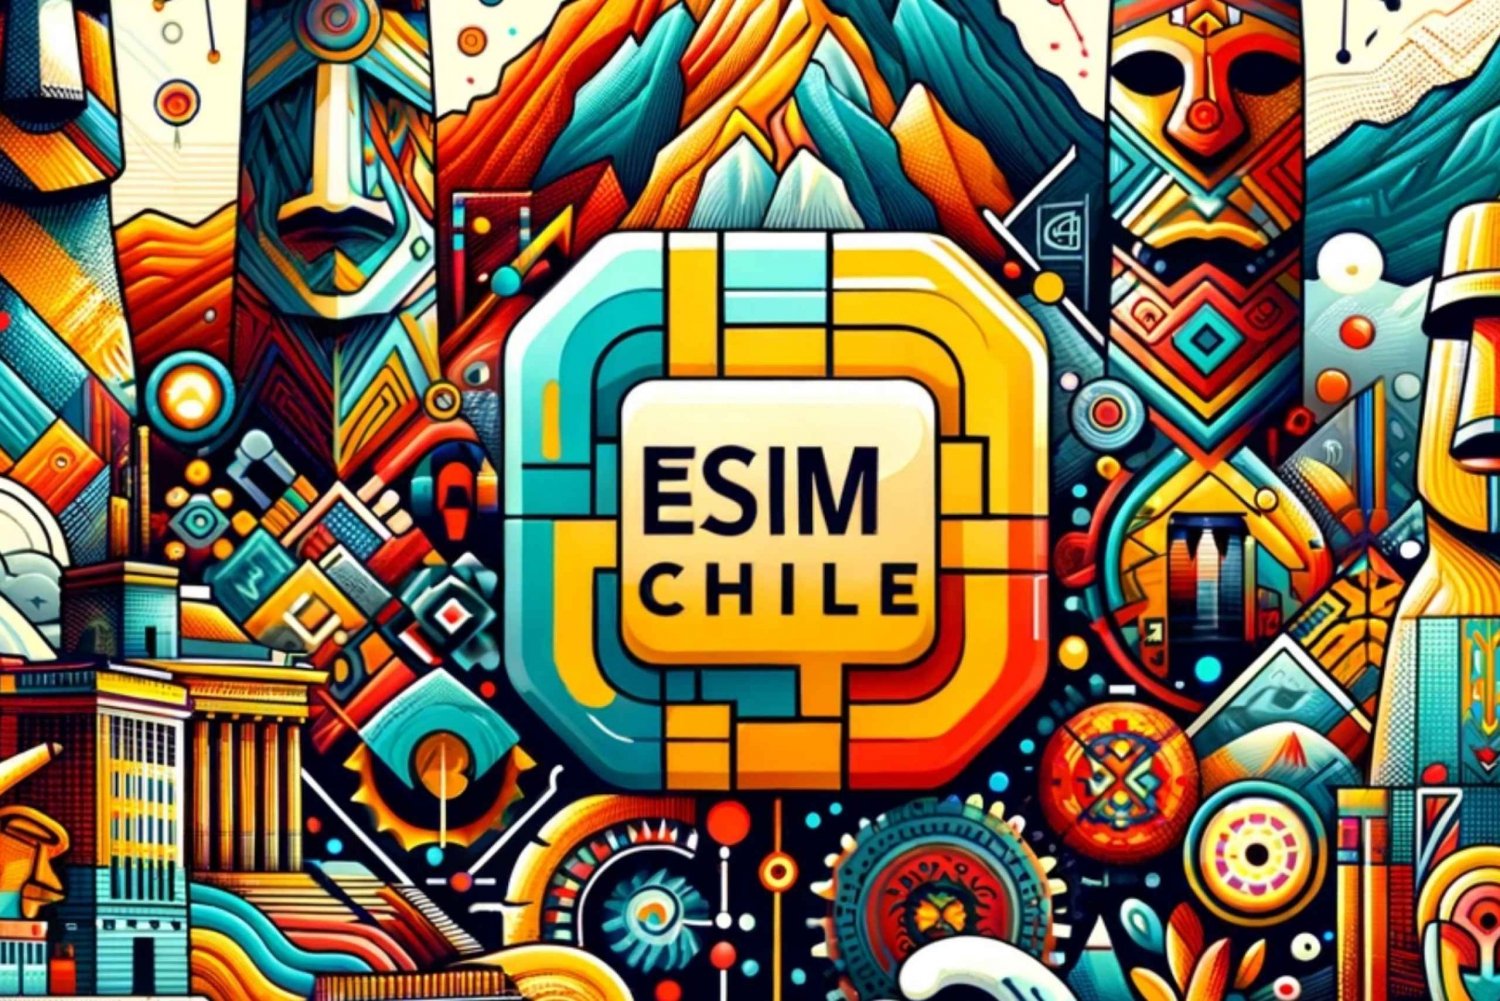 Chile eSIM